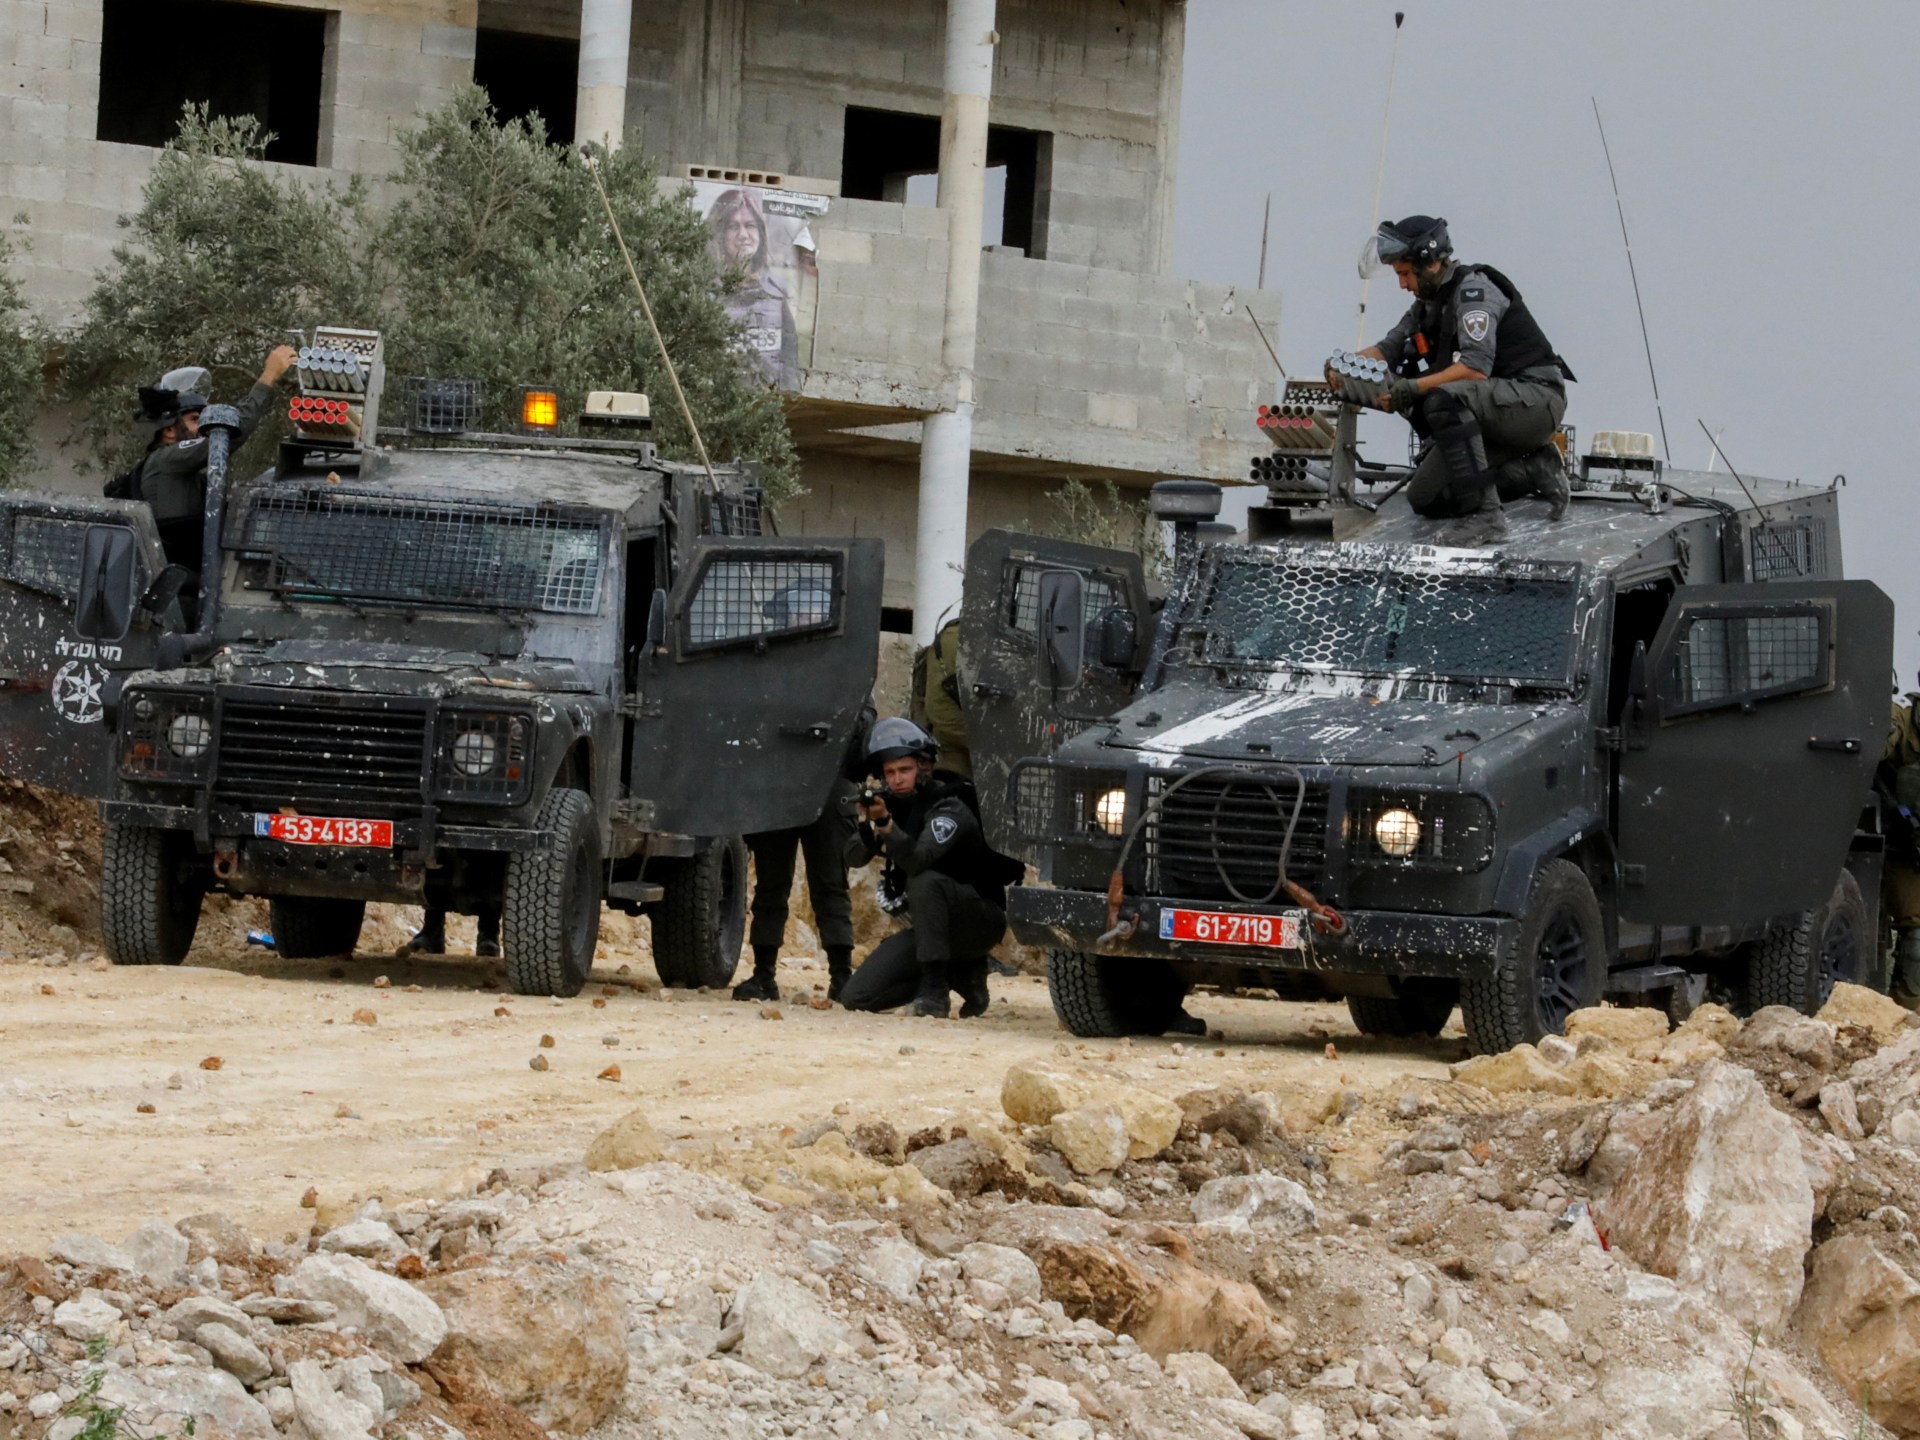 Tentara Israel Membunuh Warga Palestina, Pemukim Berbaris ke Pos Ilegal |  Berita konflik Israel-Palestina